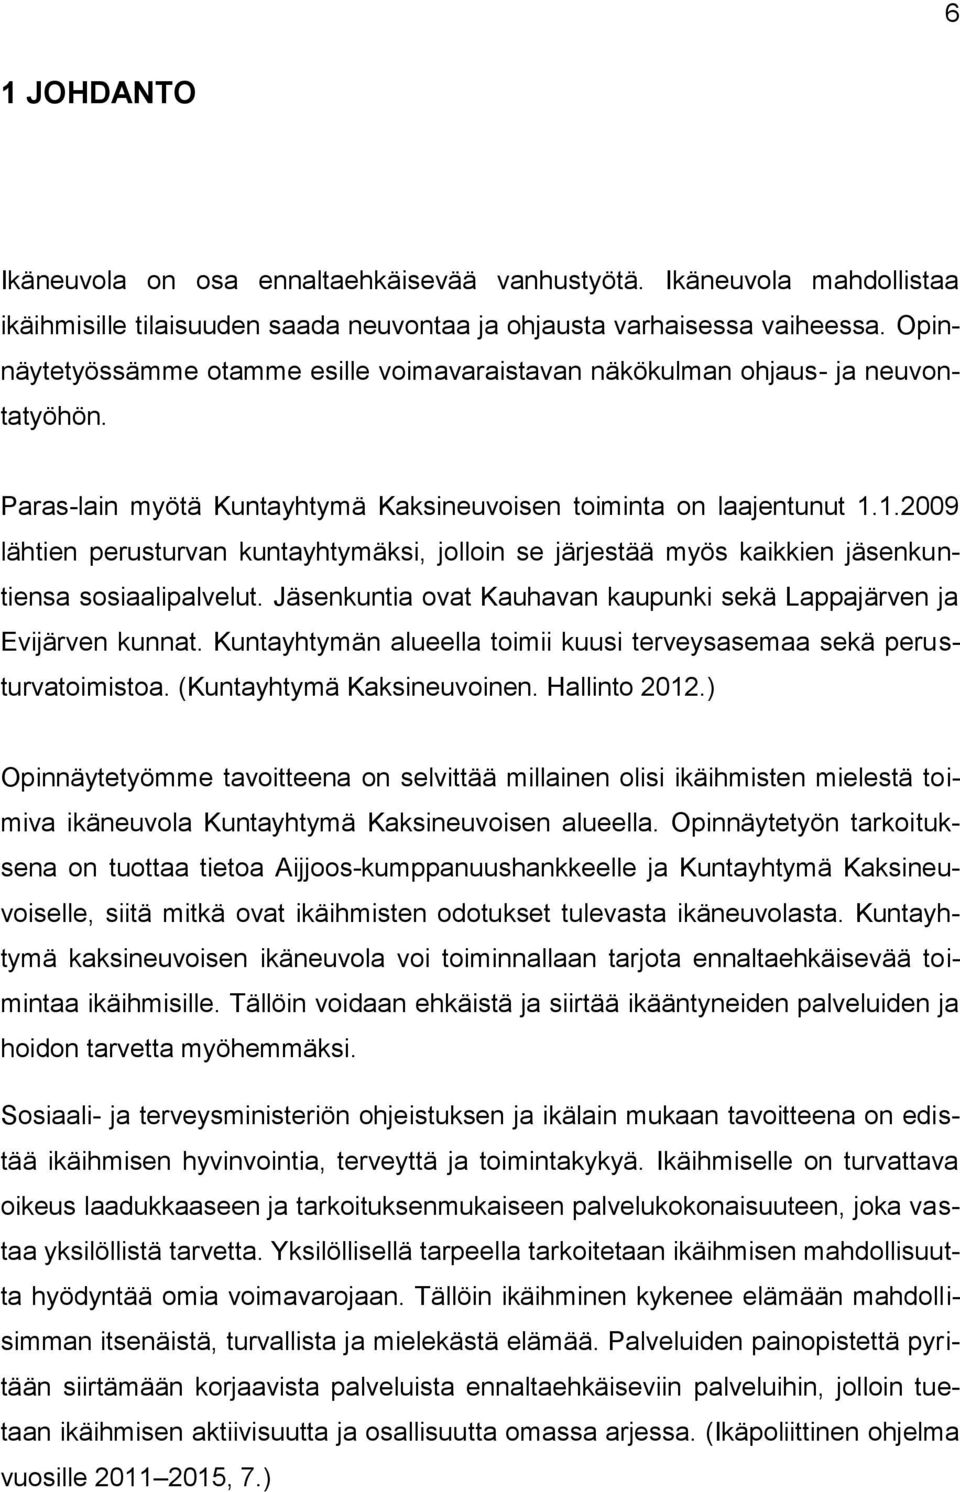 1.2009 lähtien perusturvan kuntayhtymäksi, jolloin se järjestää myös kaikkien jäsenkuntiensa sosiaalipalvelut. Jäsenkuntia ovat Kauhavan kaupunki sekä Lappajärven ja Evijärven kunnat.